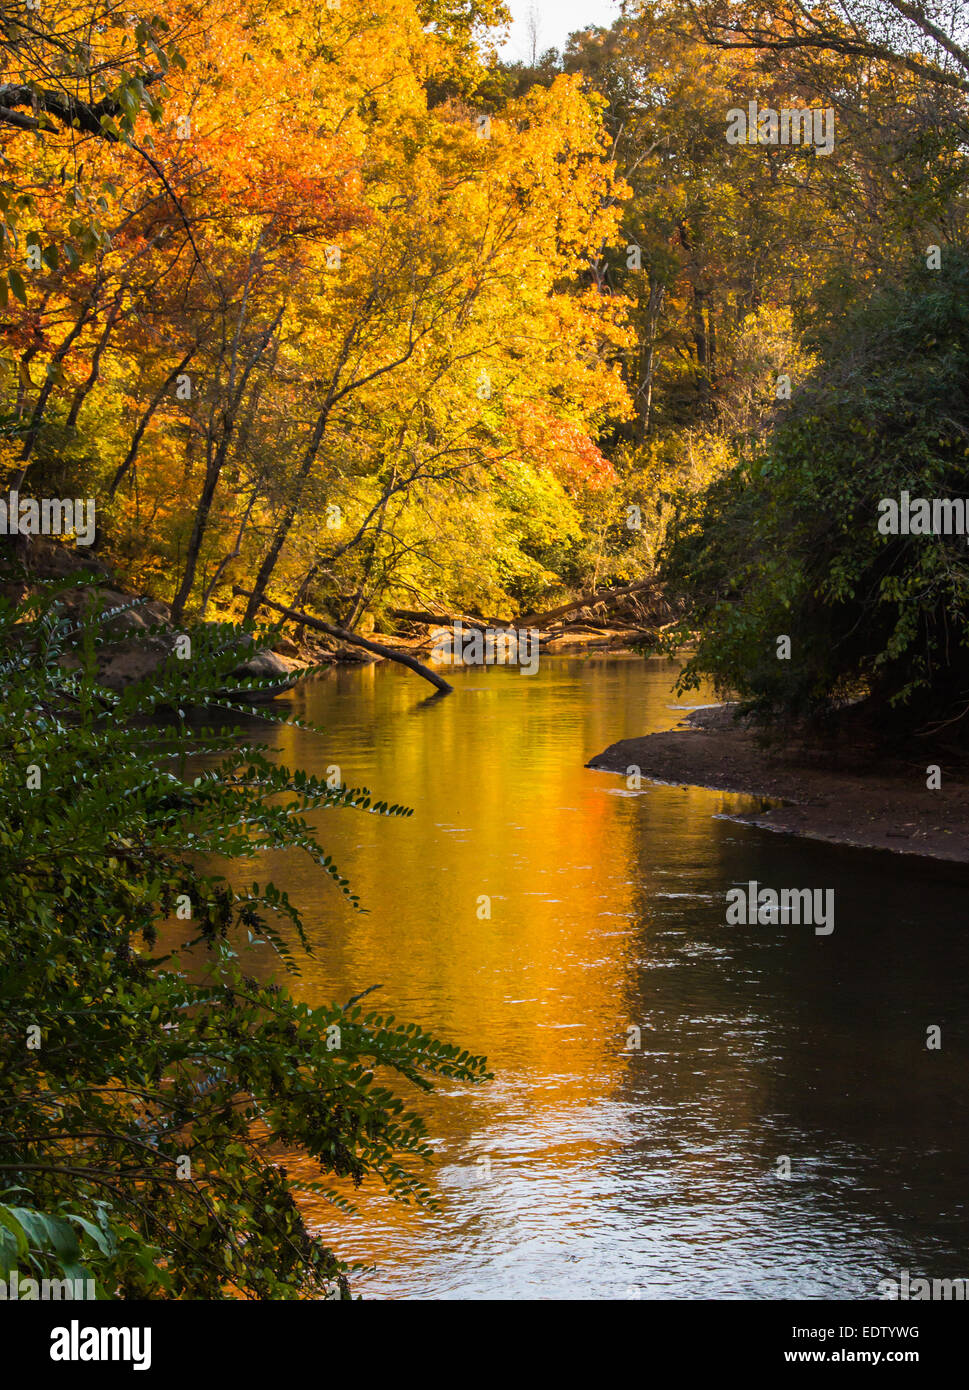 Ein Fluss fließt in einer Kurve, gesäumt von Bäumen, die wechselnden Farben im Herbst Stockfoto